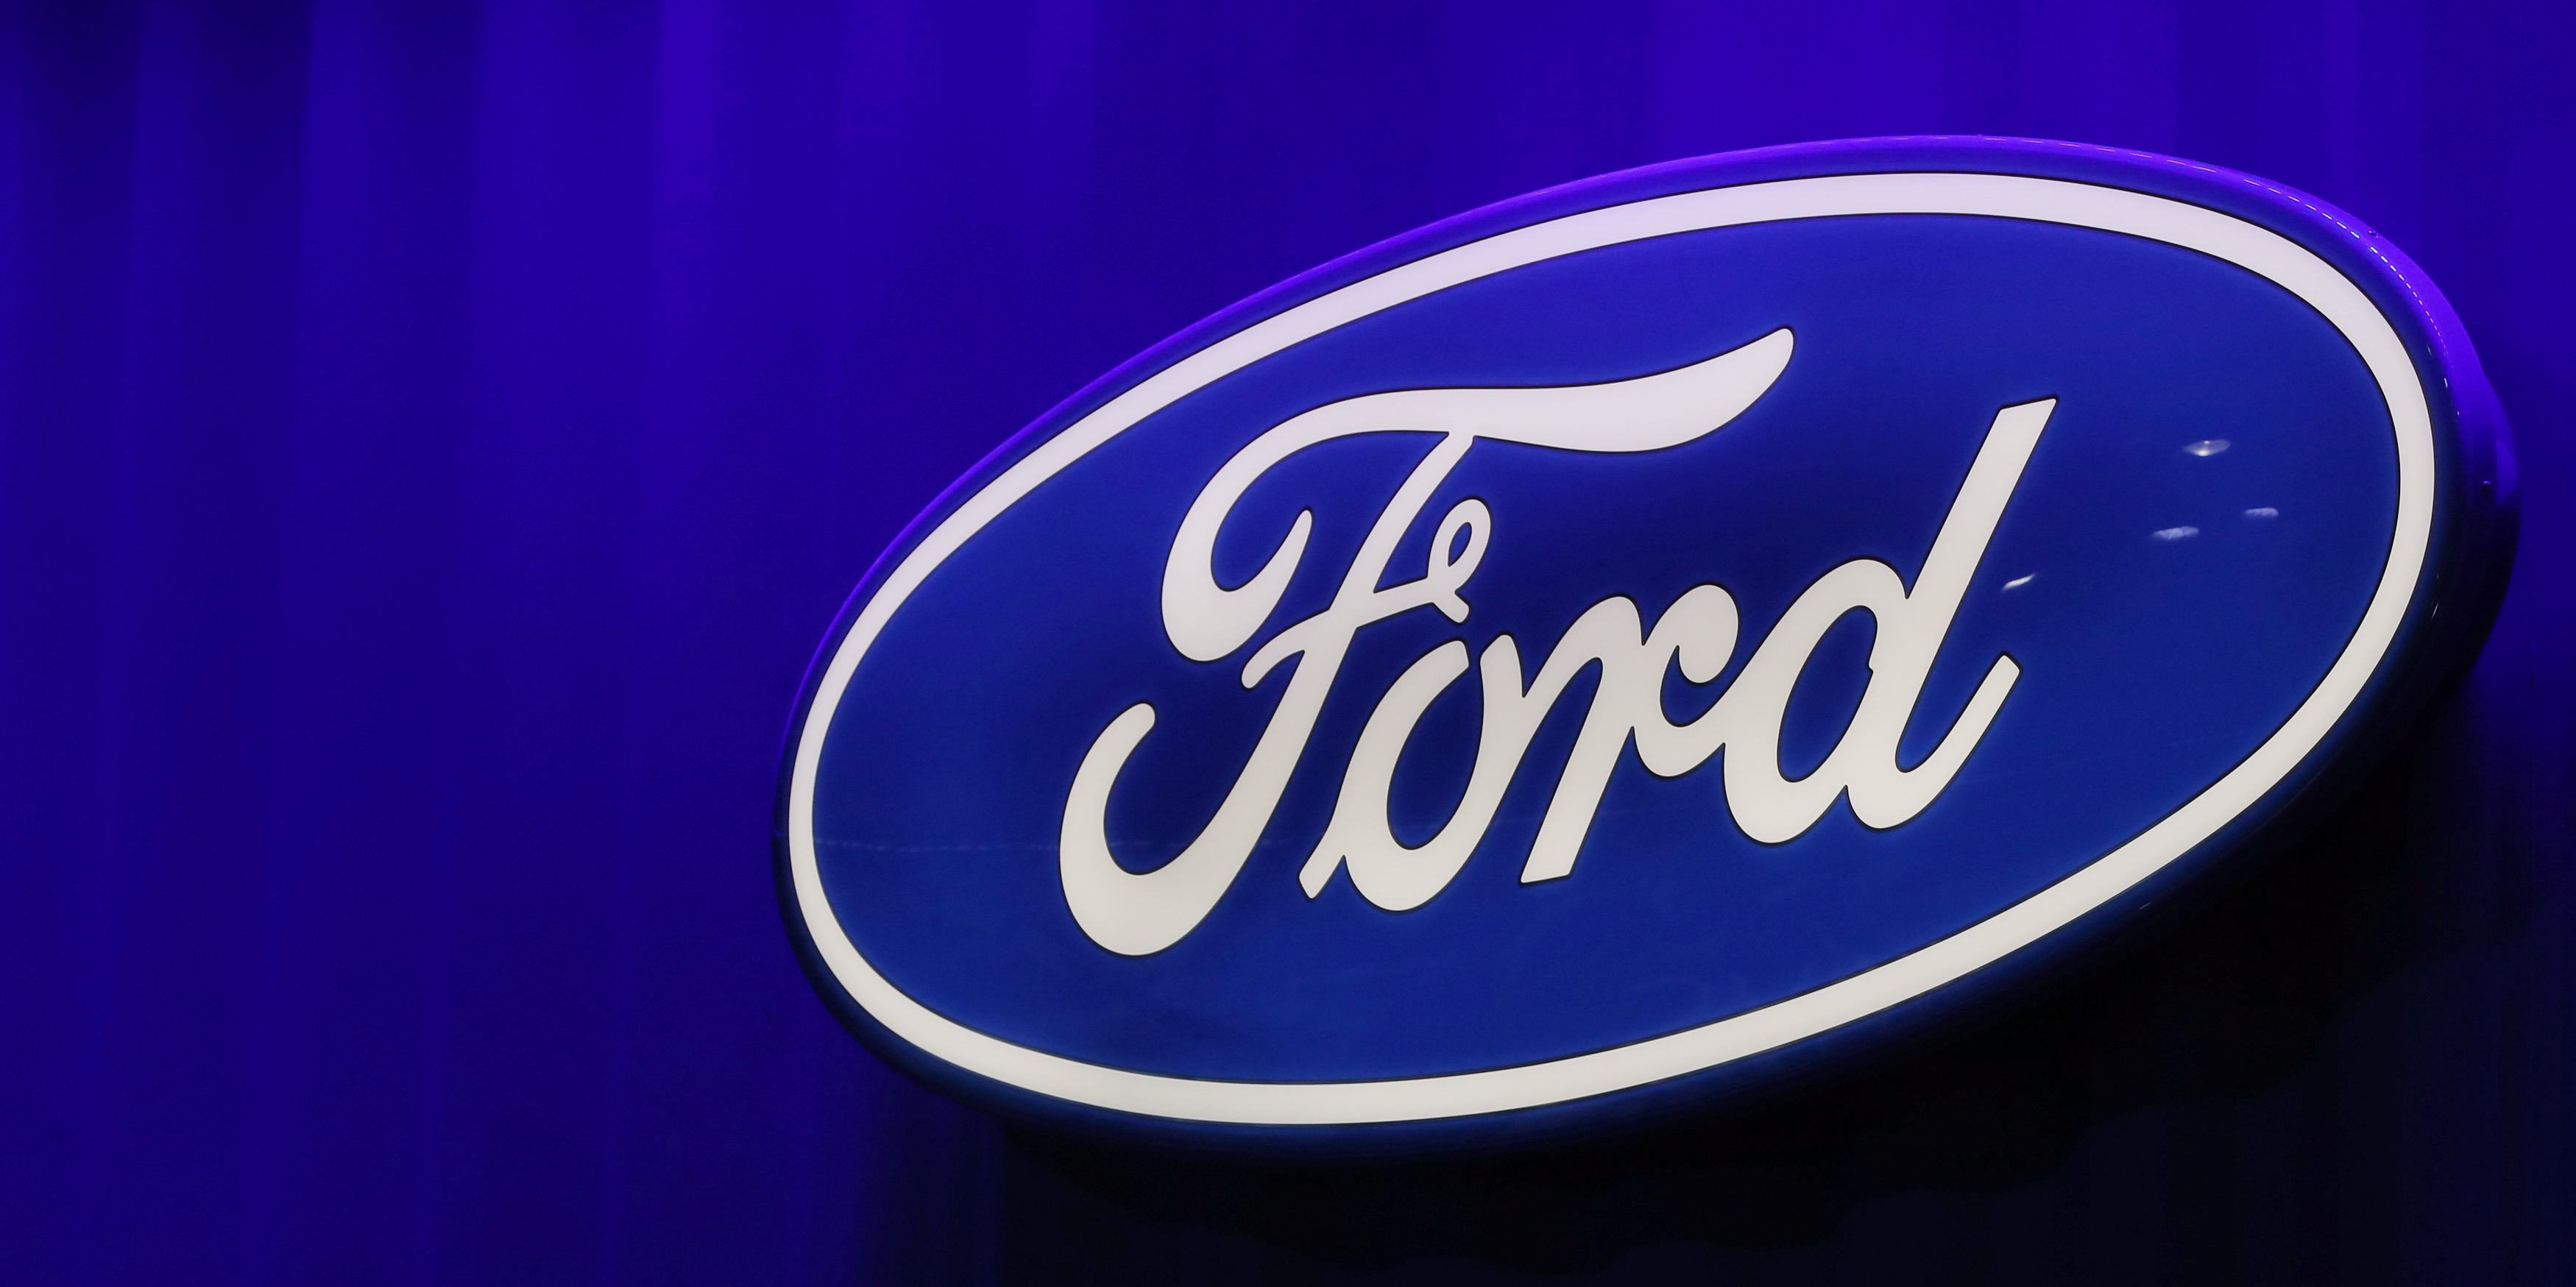 Électrique: Ford s'associe à une société chinoise pour construire une usine de batteries aux États-Unis